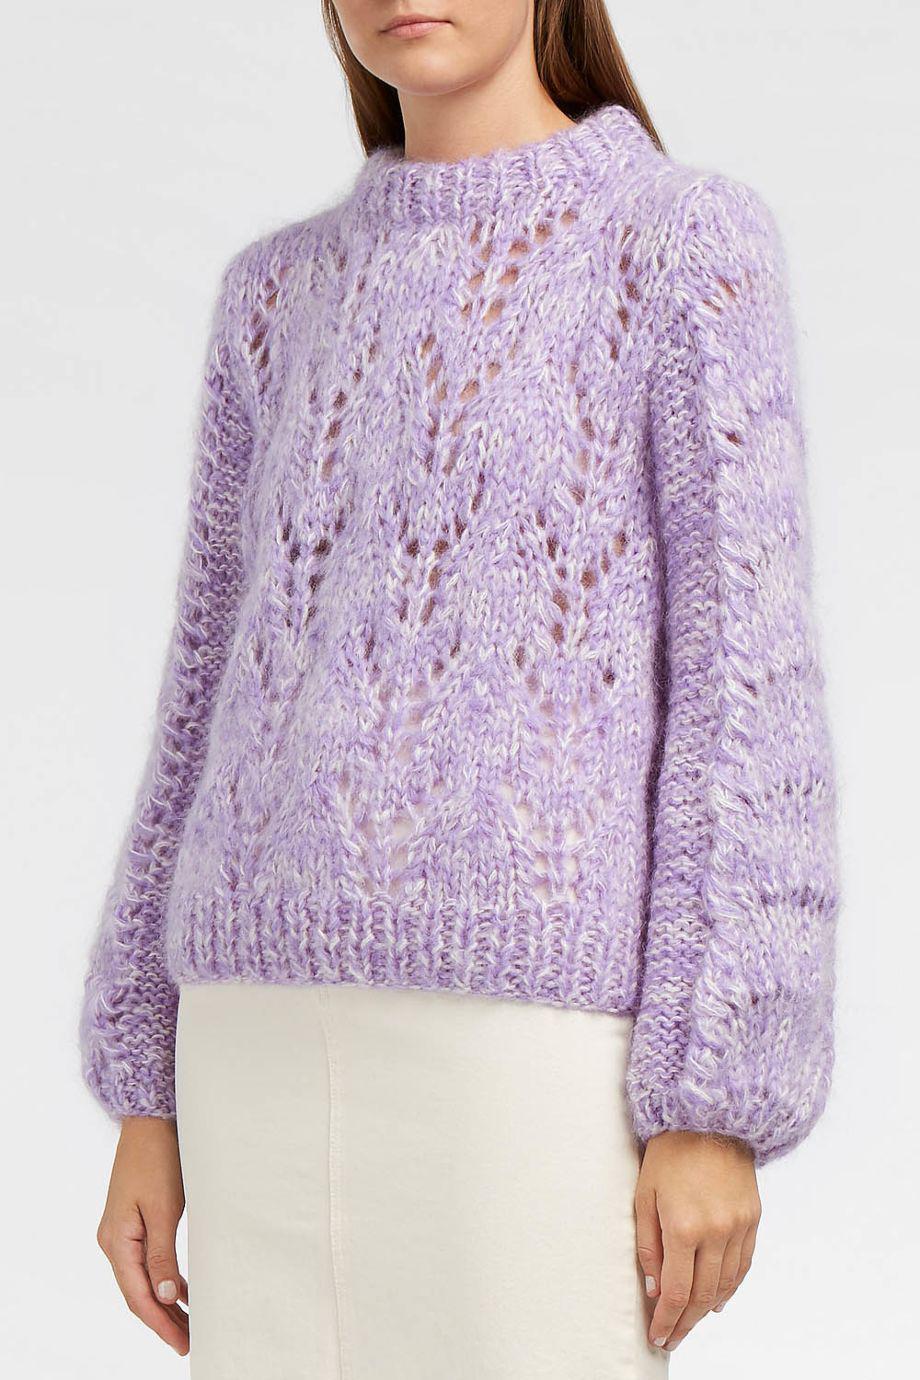 Ganni Purple Sweater Clearance, 57% OFF | www.markiesminigolf.com